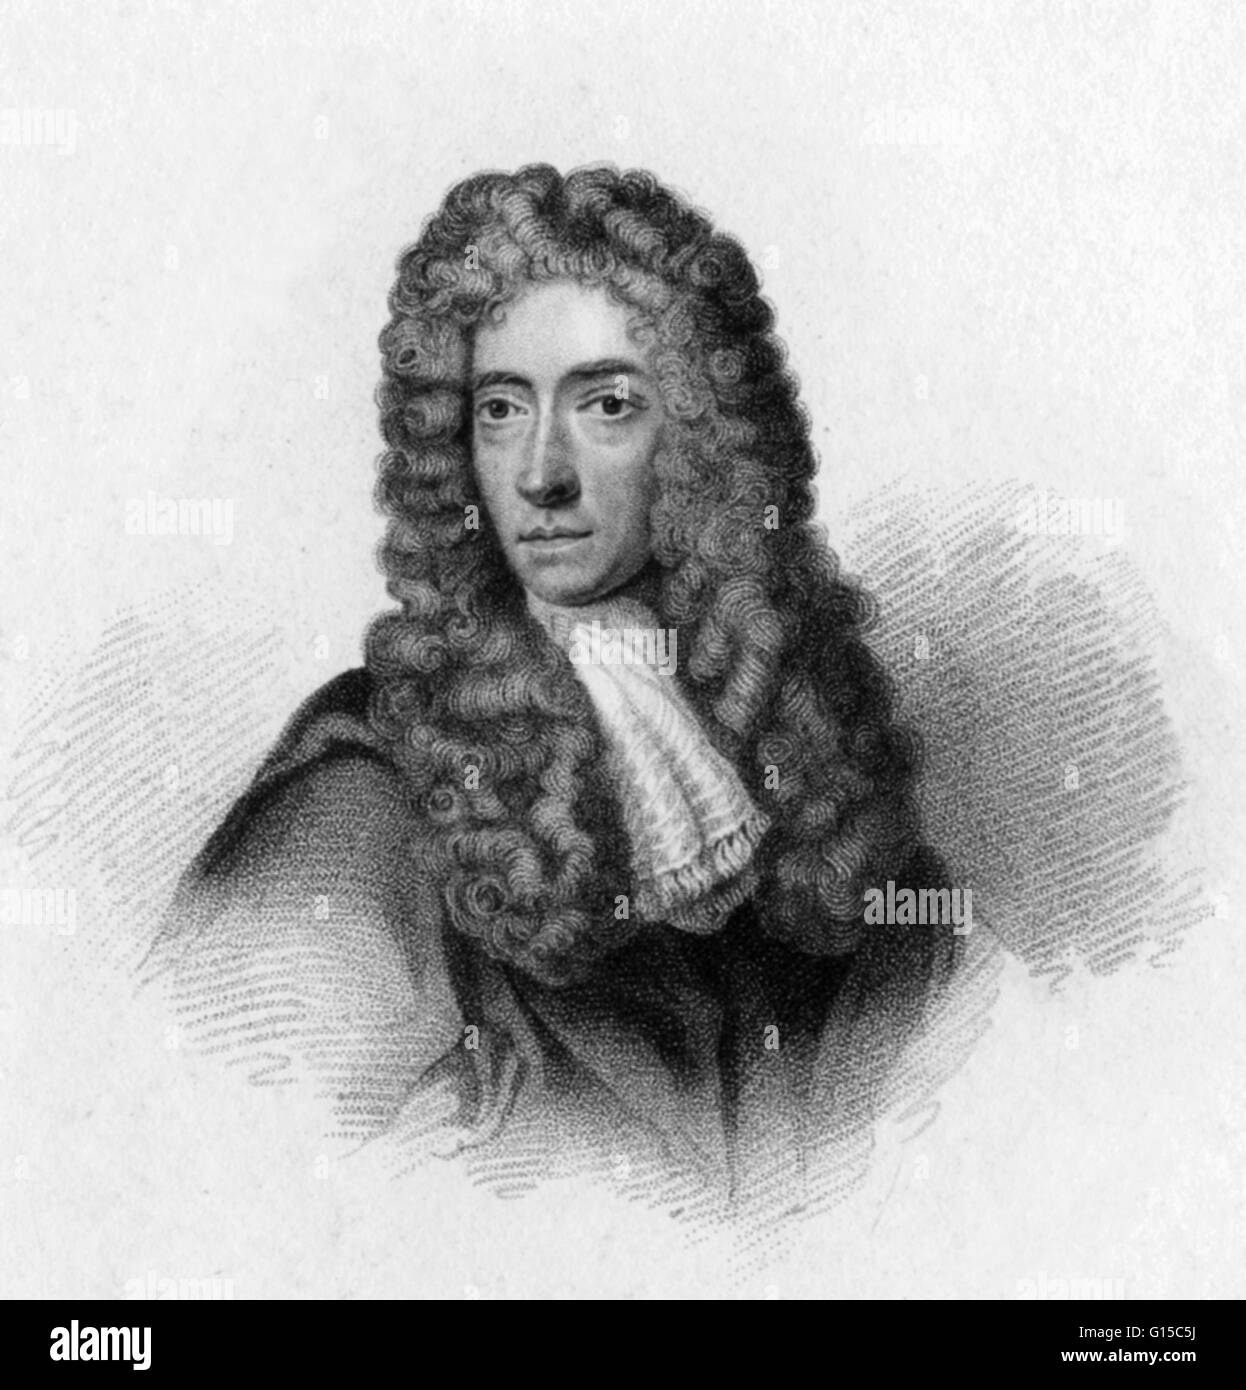 Robert Boyle (25 janvier 1627 - 31 décembre 1691) était un philosophe naturel, chimiste, physicien et inventeur. Il est considéré aujourd'hui comme le premier chimiste moderne, et l'un des pionniers de la méthode scientifique expérimentale moderne. Tous les importa Banque D'Images